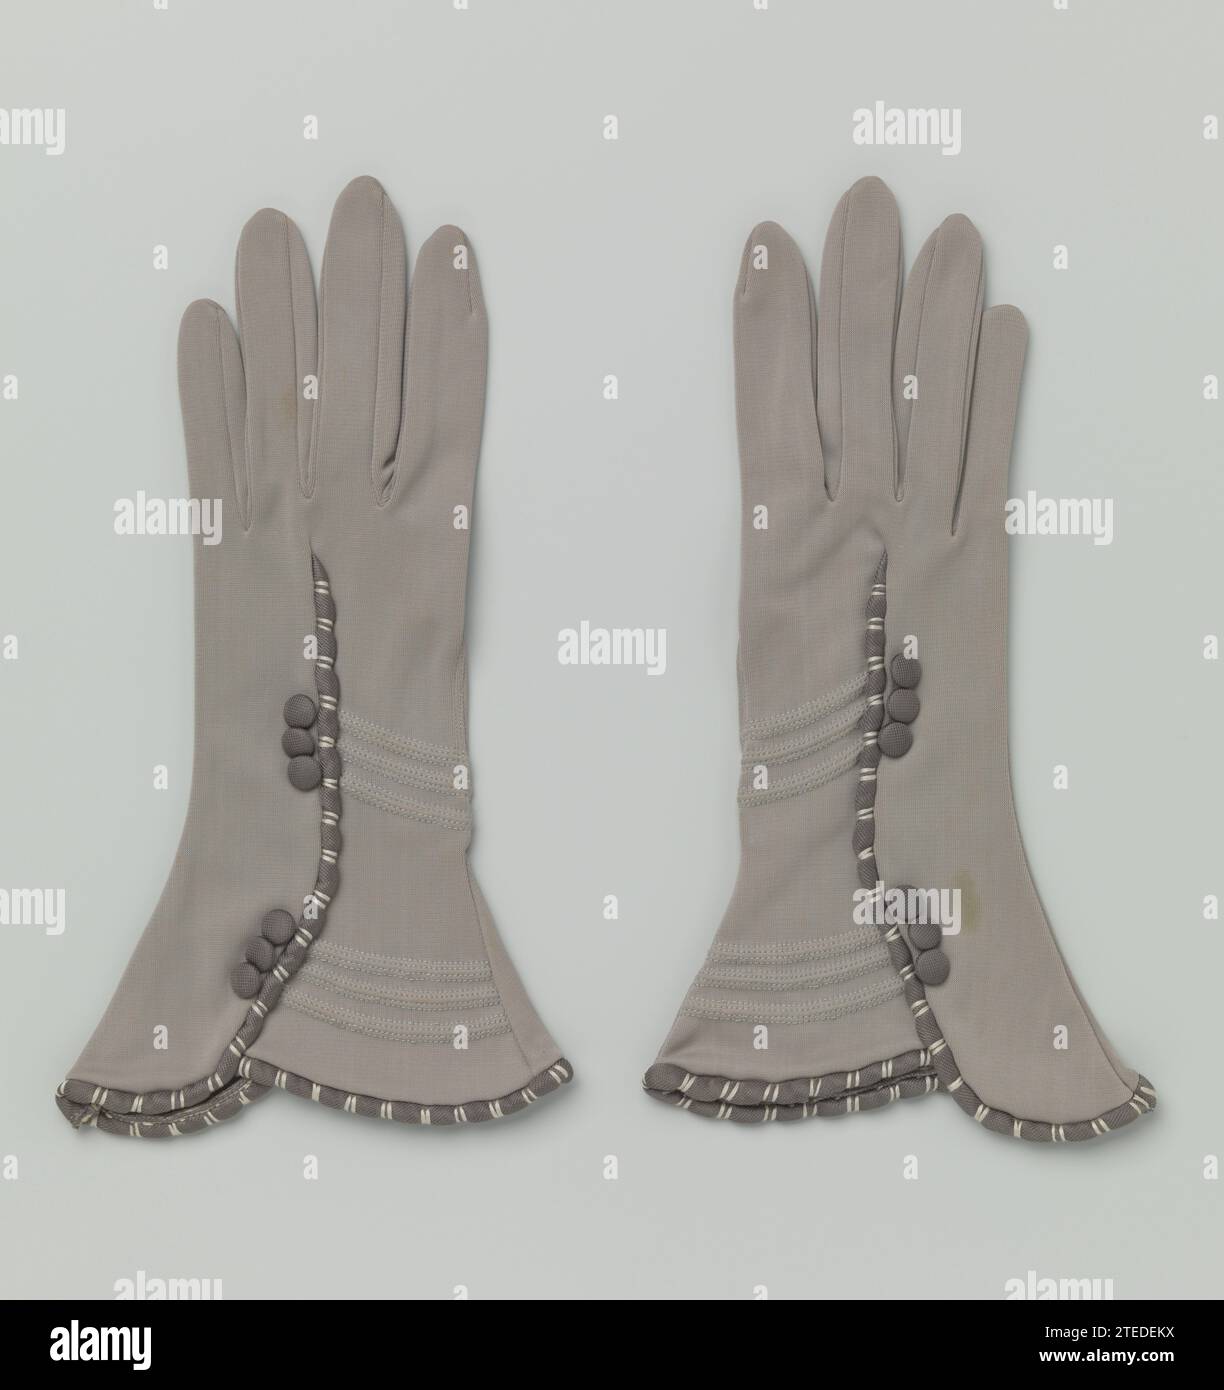 Paar handschuhe mit Aussparung am Ärmelabschluss Maus-grau Nylonhandschuhe  mit ausgestelltem Haube, Linke Maustaste - Grau nylon Handschuhe. Getrimmt  fächerförmigen Kappen. Auf die Hand einer halbrunden ausgestelltem Saum, in  dem ein